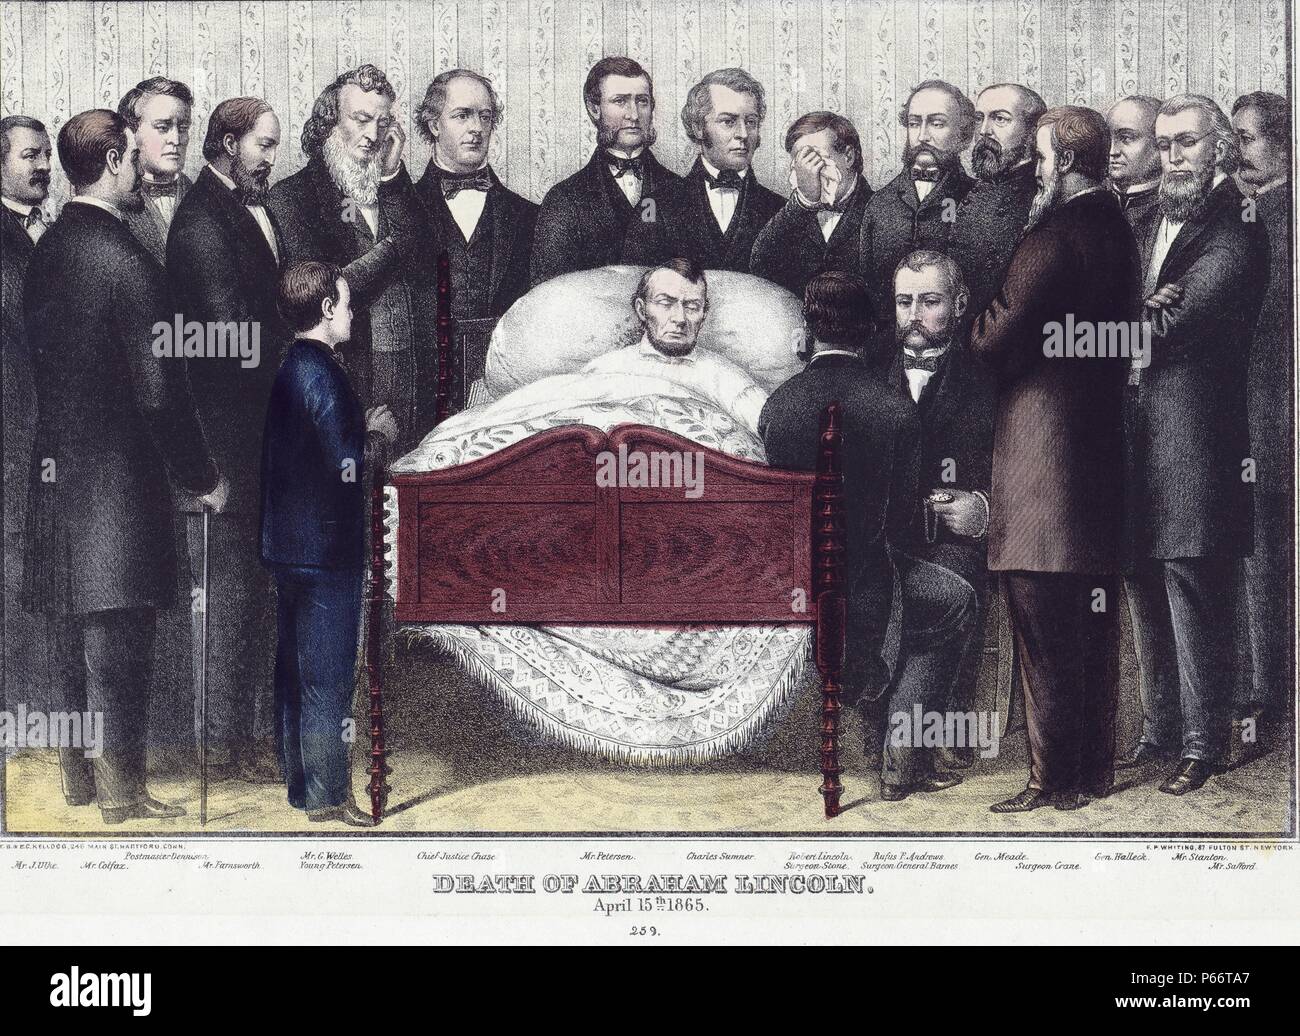 Mort d'Abraham Lincoln, le 15 avril 1865. Imprimer montre Abraham Lincoln sur son lit de mort entouré par grand groupe d'hommes, chacun identifié sur l'impression. Banque D'Images